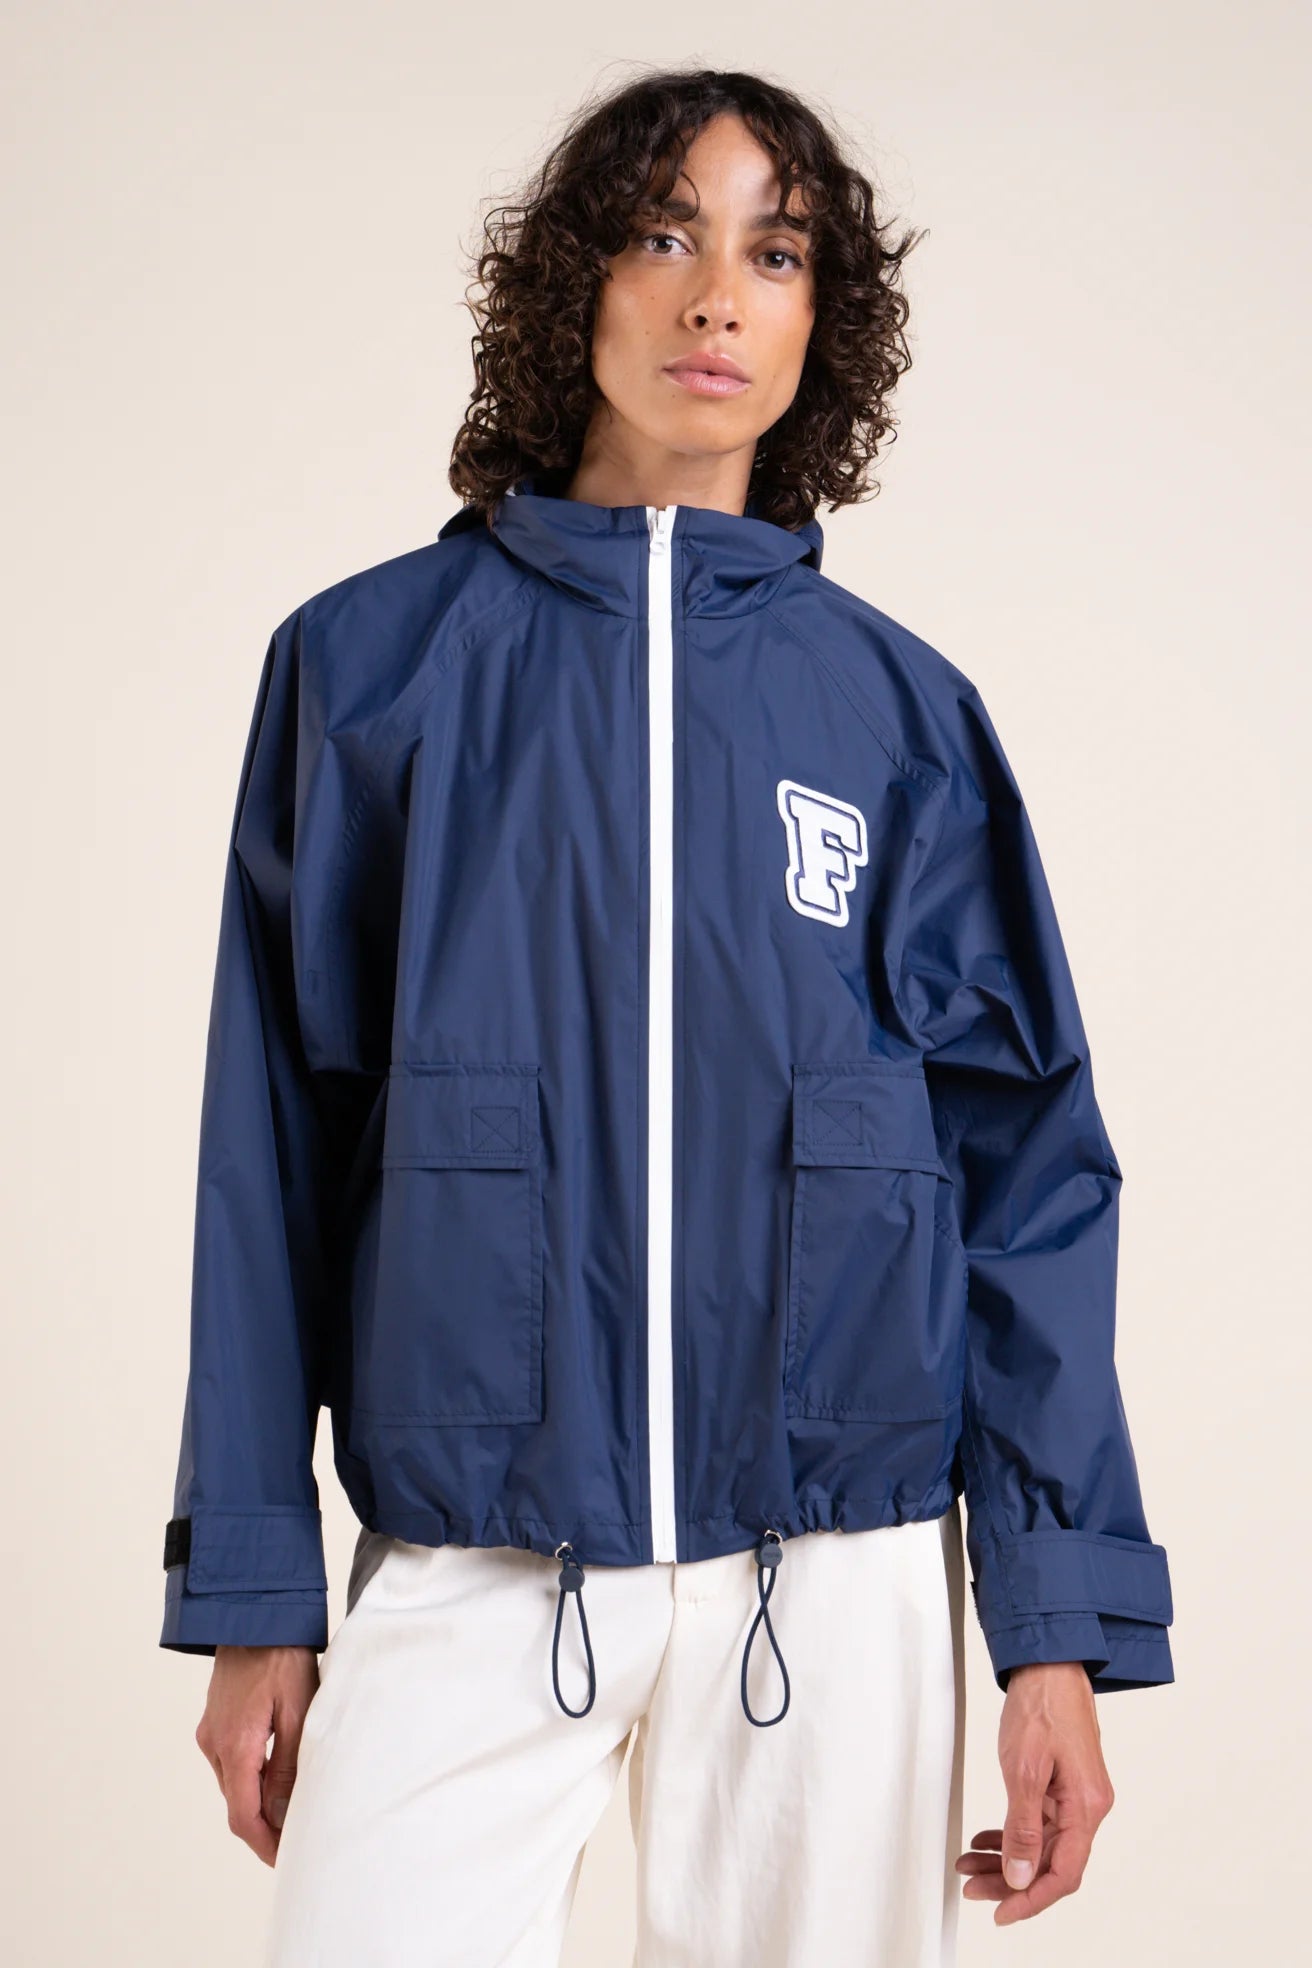 Sorbonne - university patch jacket - Flotte #couleur_indigo